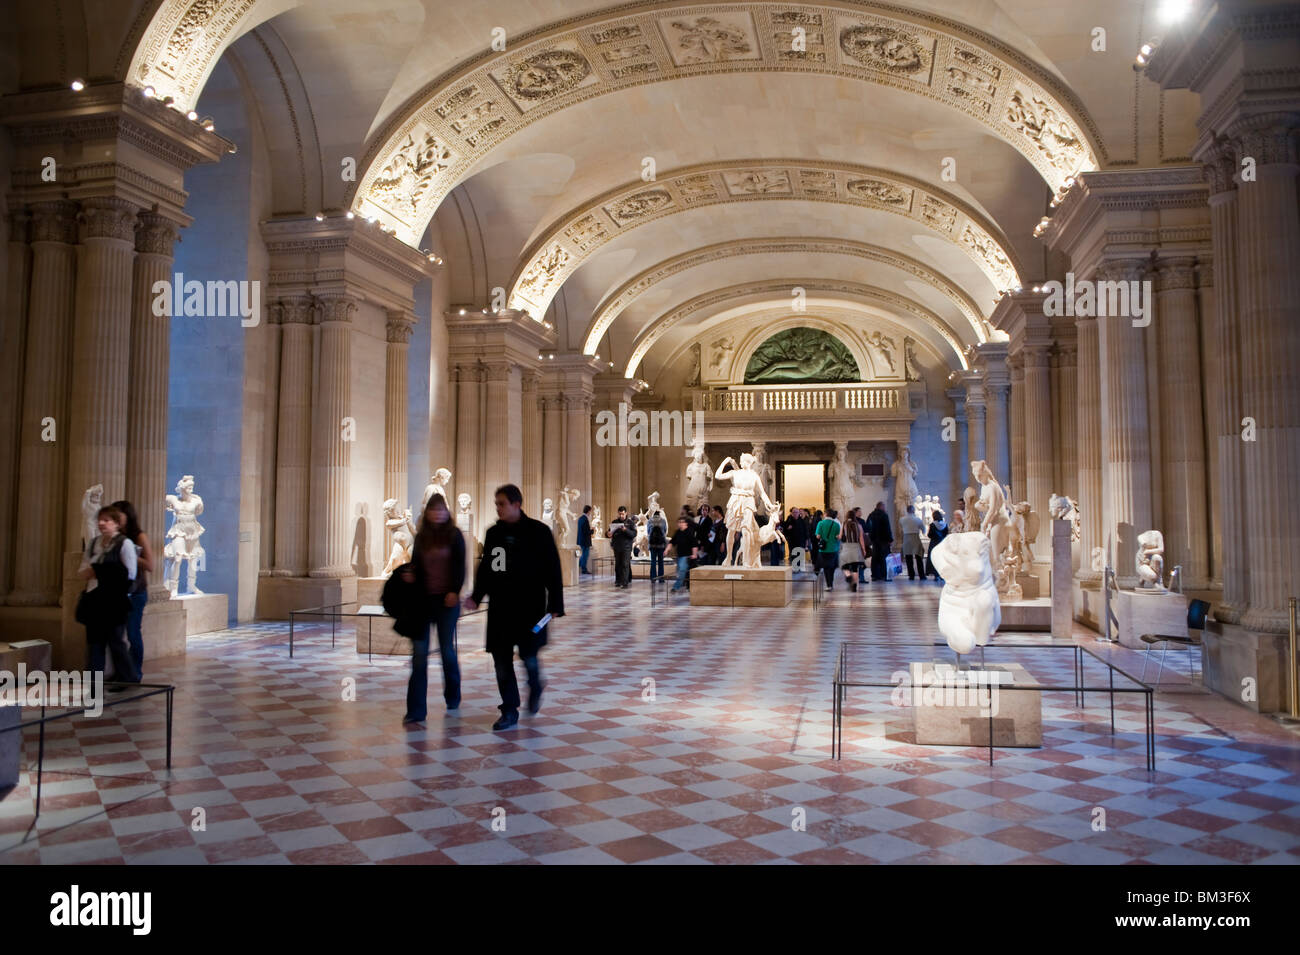 Paris, France, grande foule de gens, touristes visitant l'intérieur de Hall, ancienne civilisation romaine Sculpture exposition Galerie d'art, statues de musée Banque D'Images